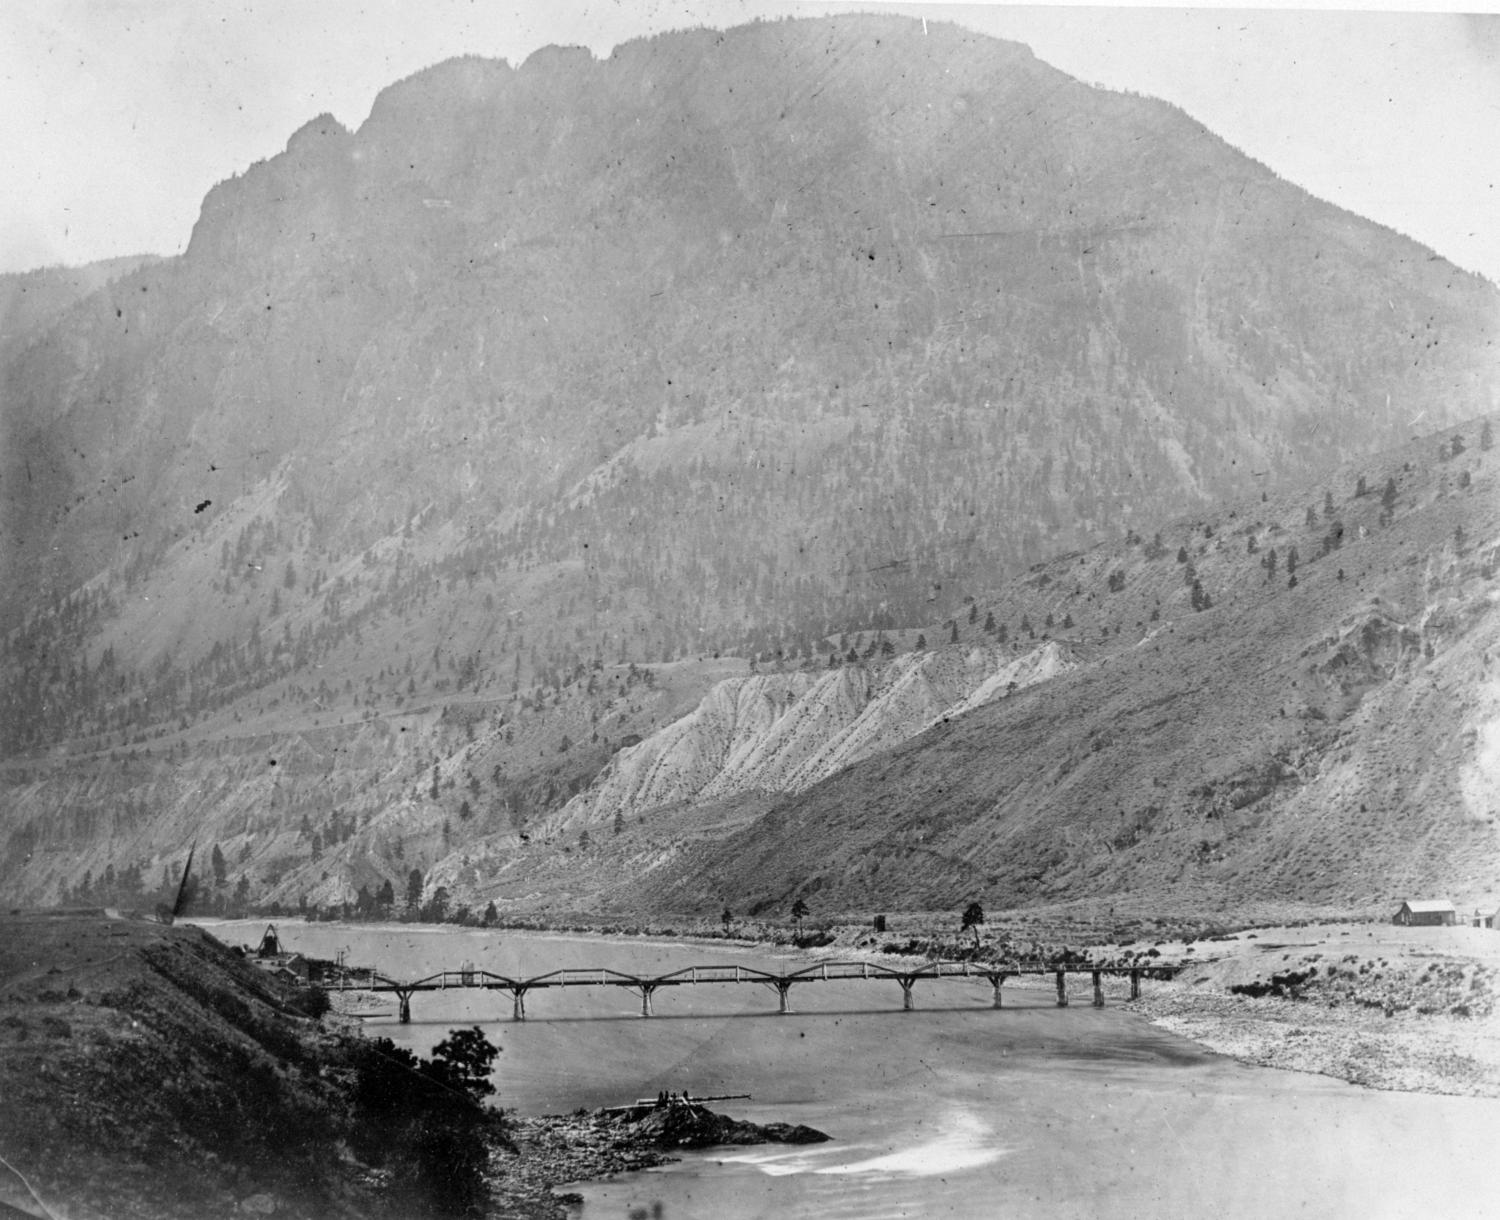 Spences Bridge, probably around 1900